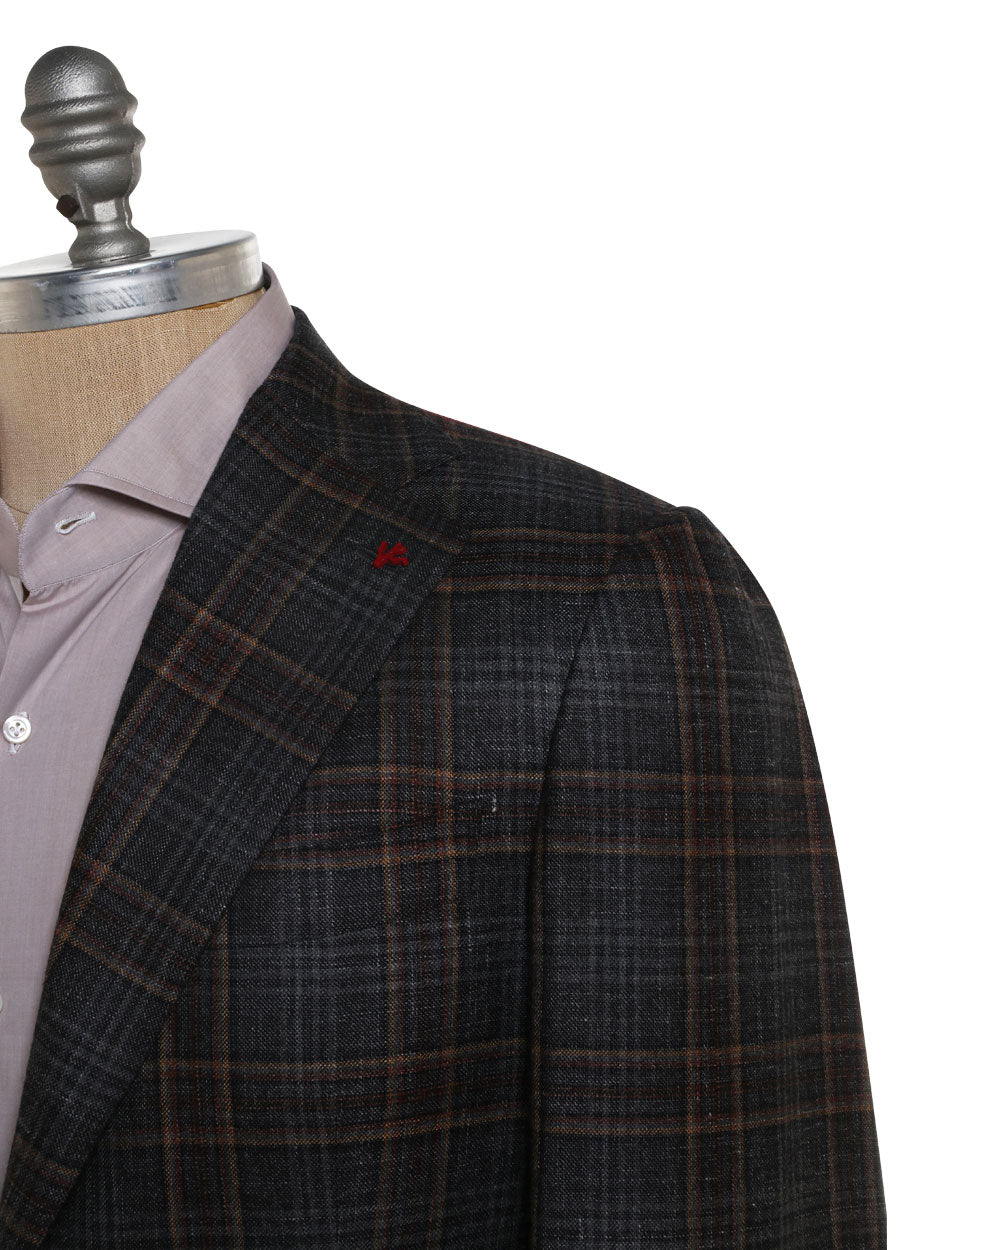 Grey and Tan Wool Blend Windowpane Sportcoat